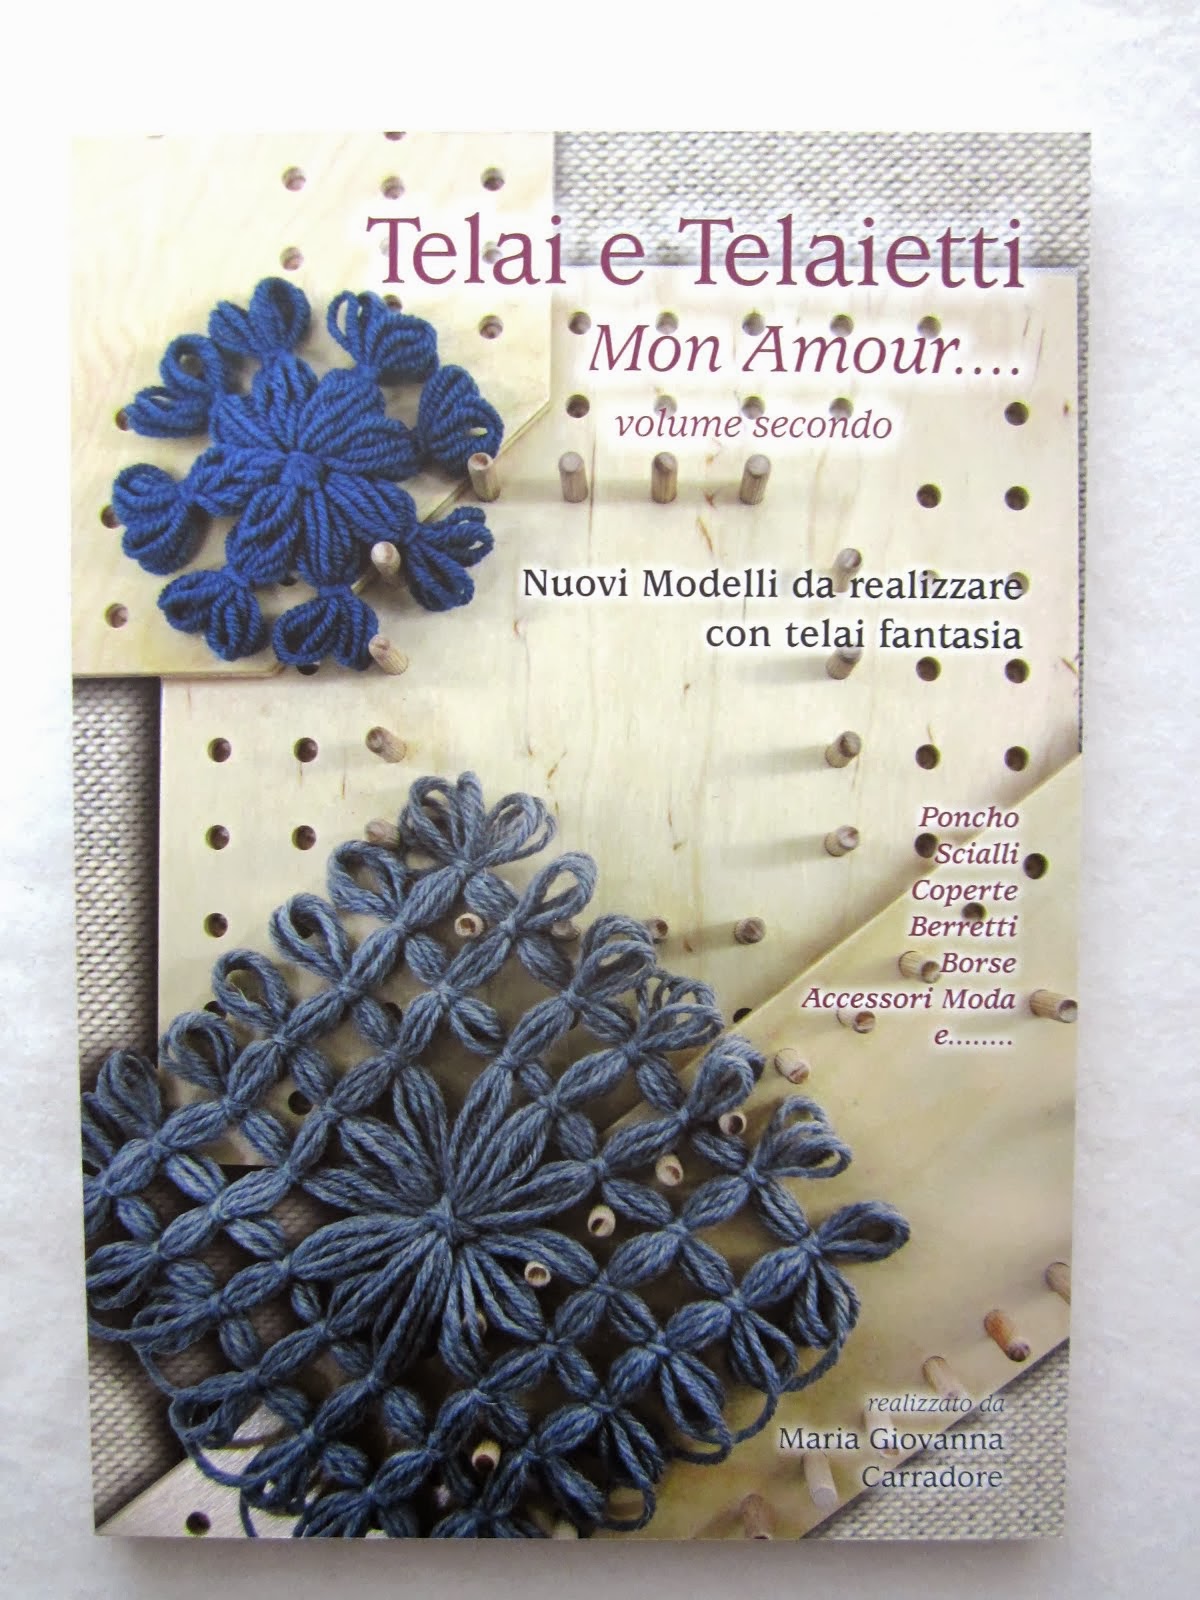 Il secondo volume di Telai e Telaietti Mon Amour